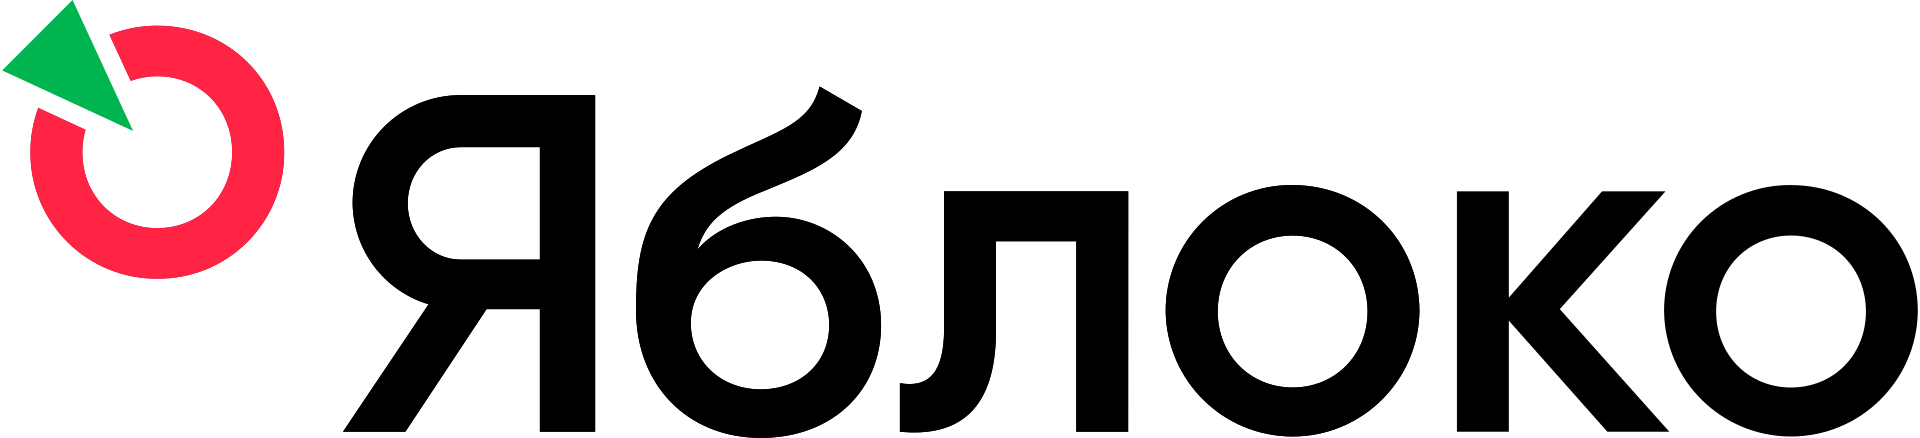 1920px-Yabloko_logo_2018.svg.png